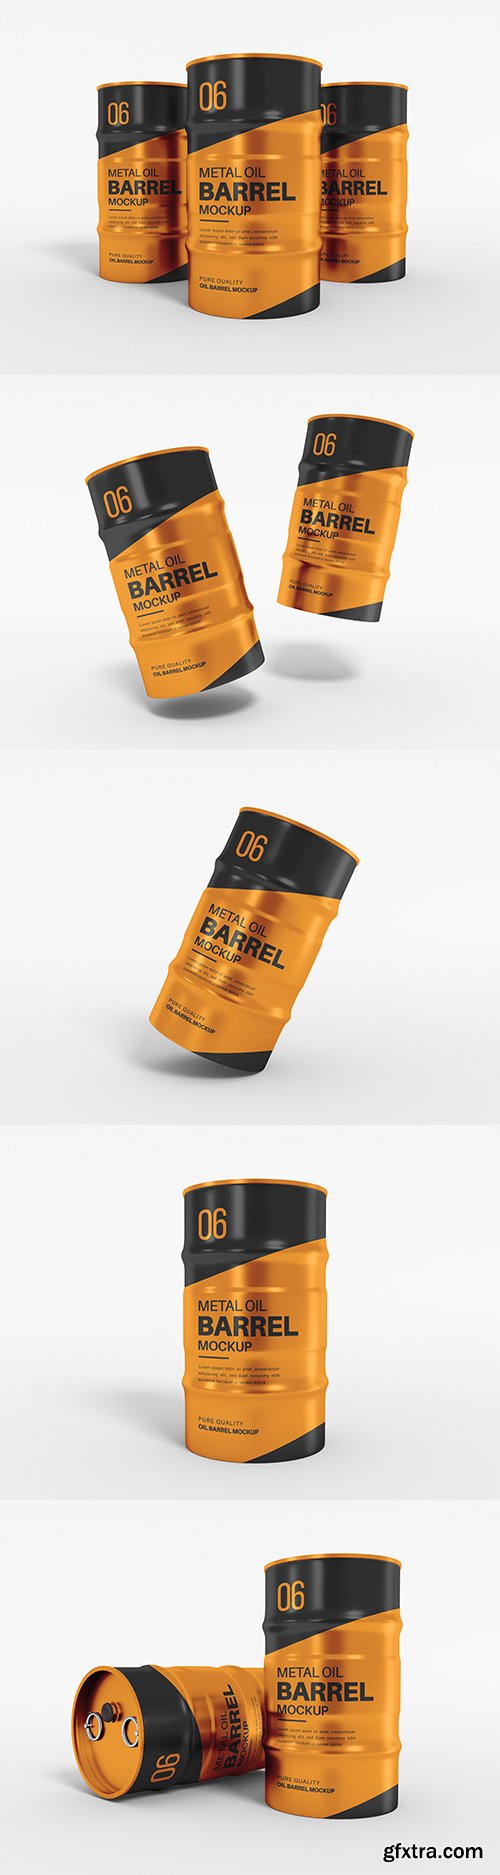 Metal oil barrel drum packaging mockup